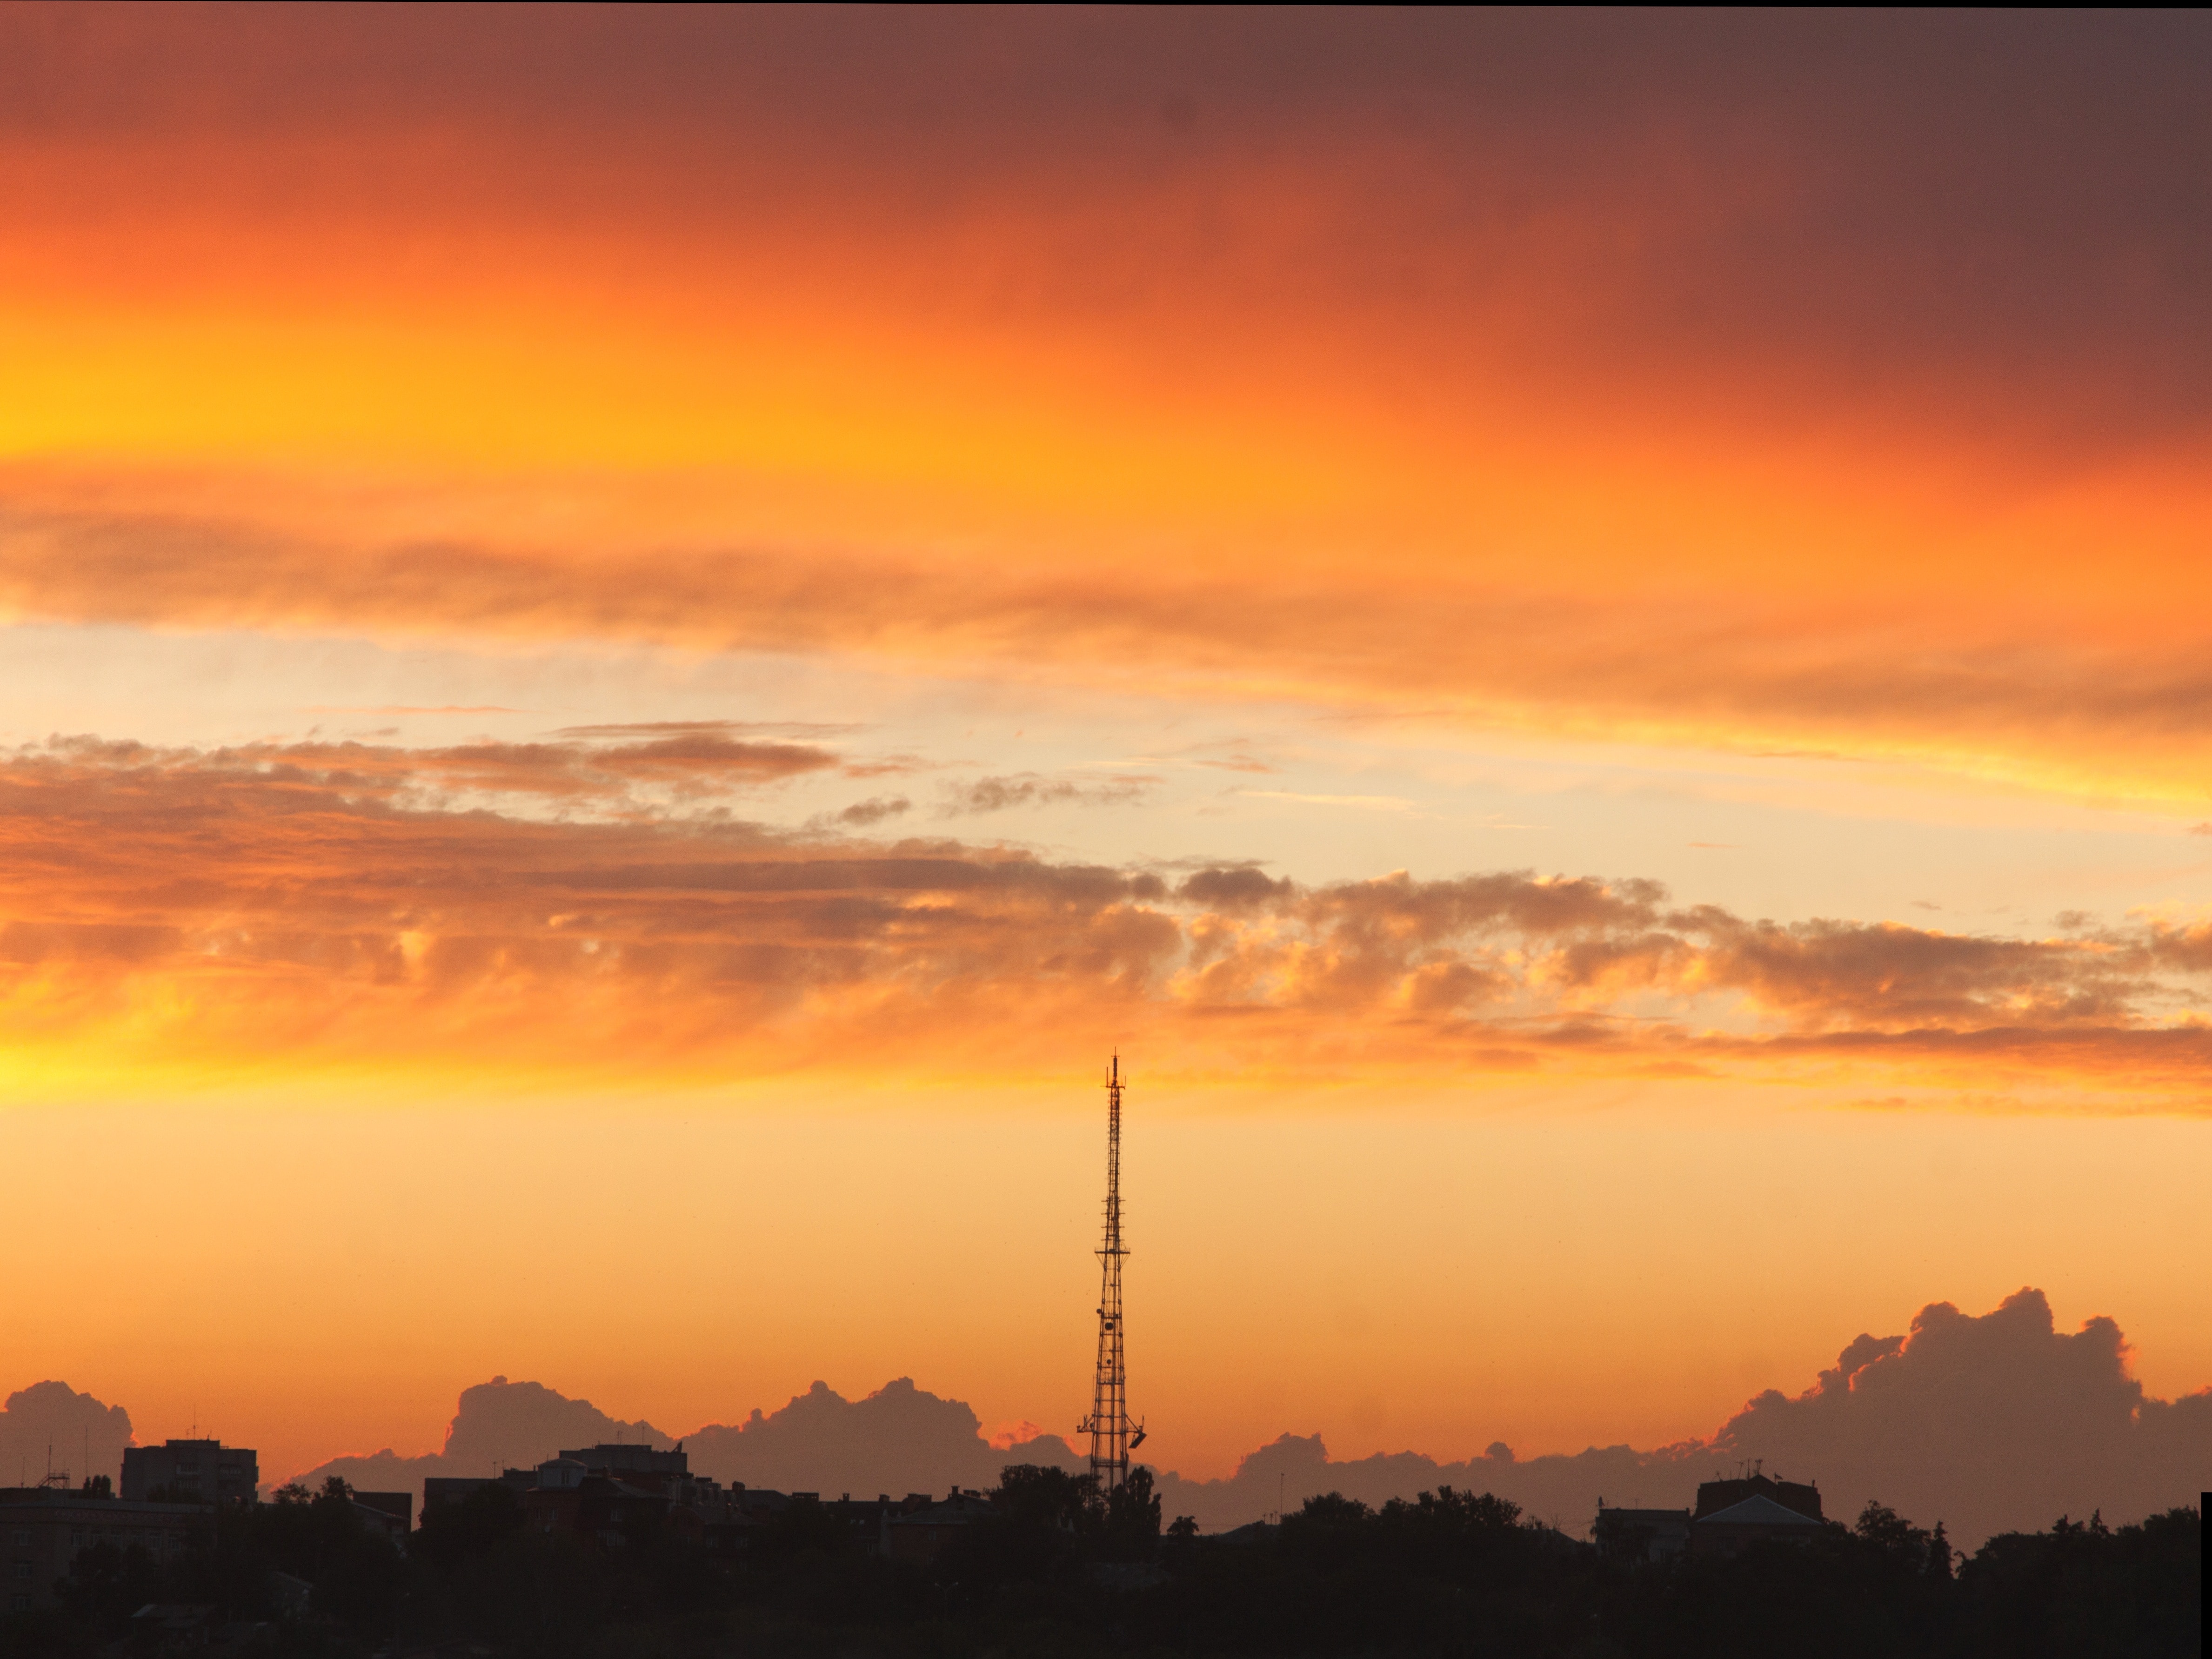 black tower under orange sunset